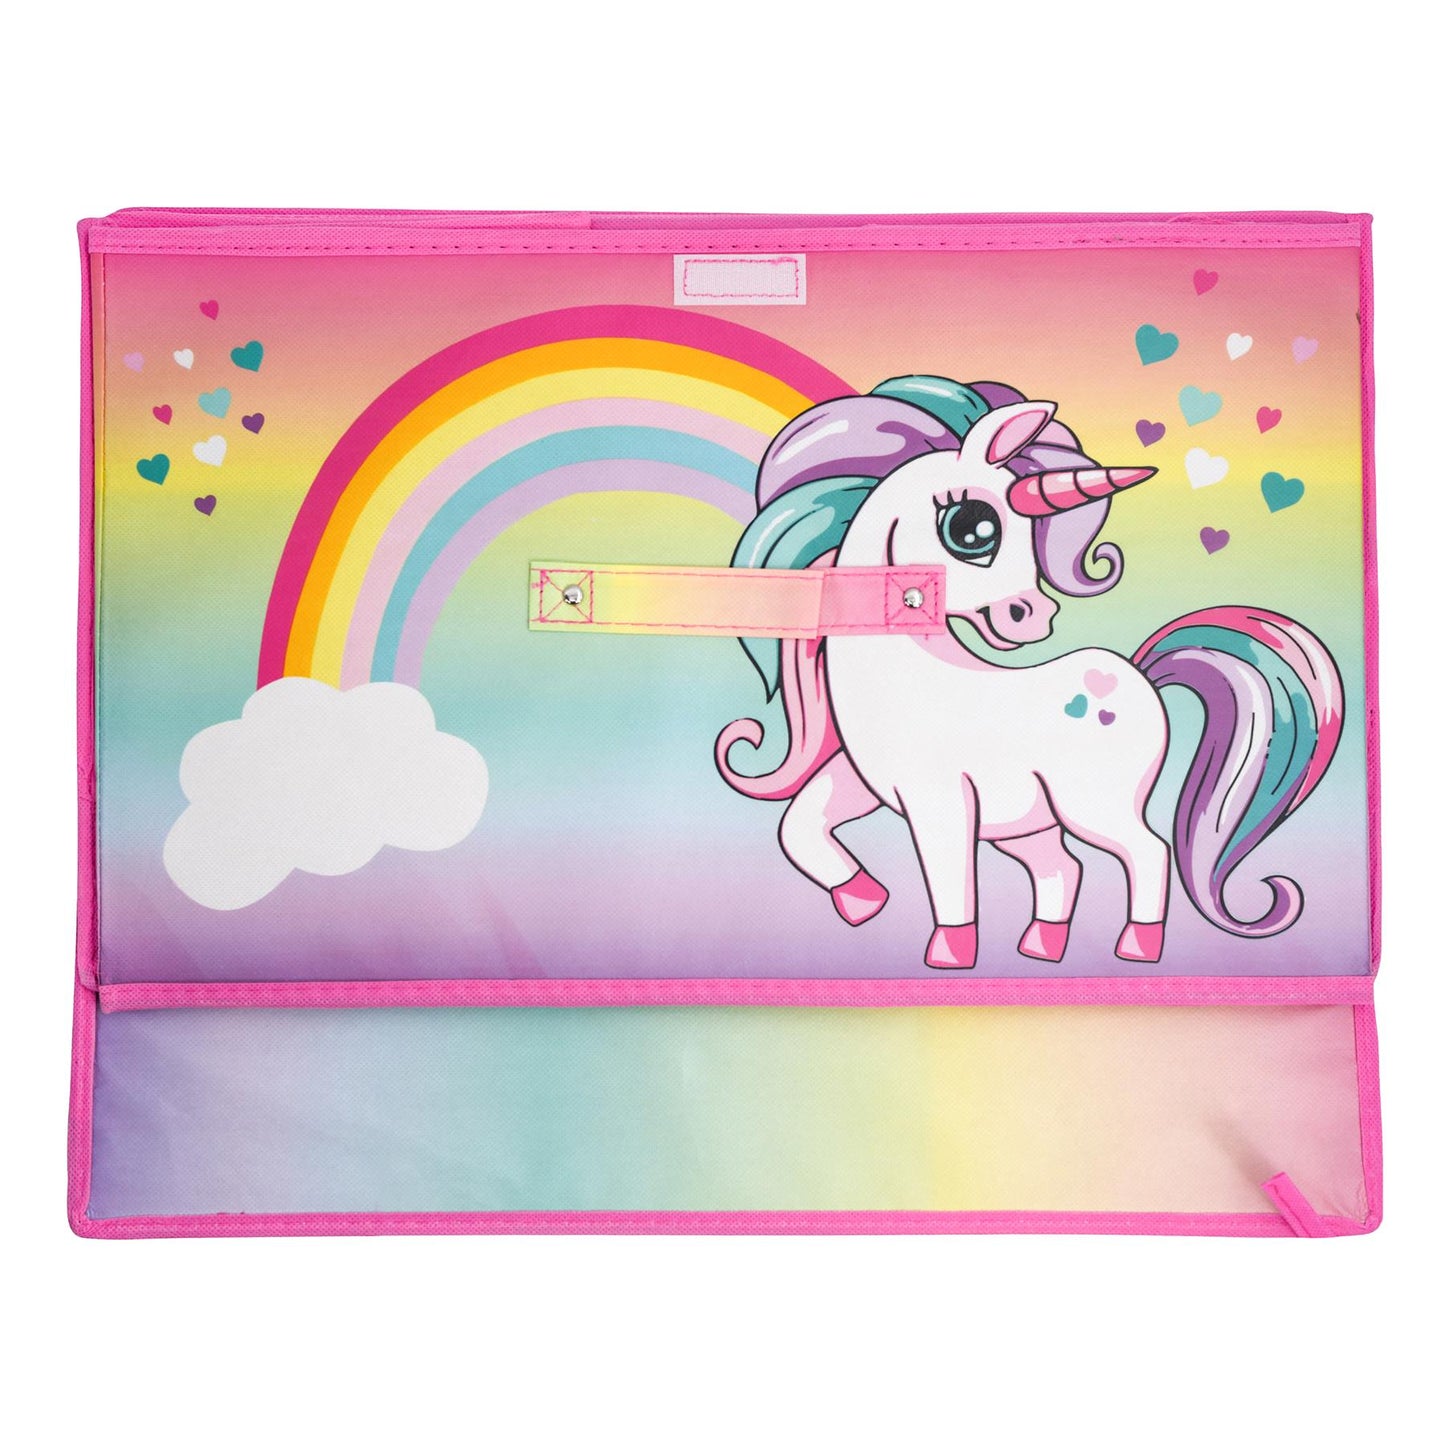 Rainbow Unicorn Storage Box by The Magic Toy Shop - UKBuyZone